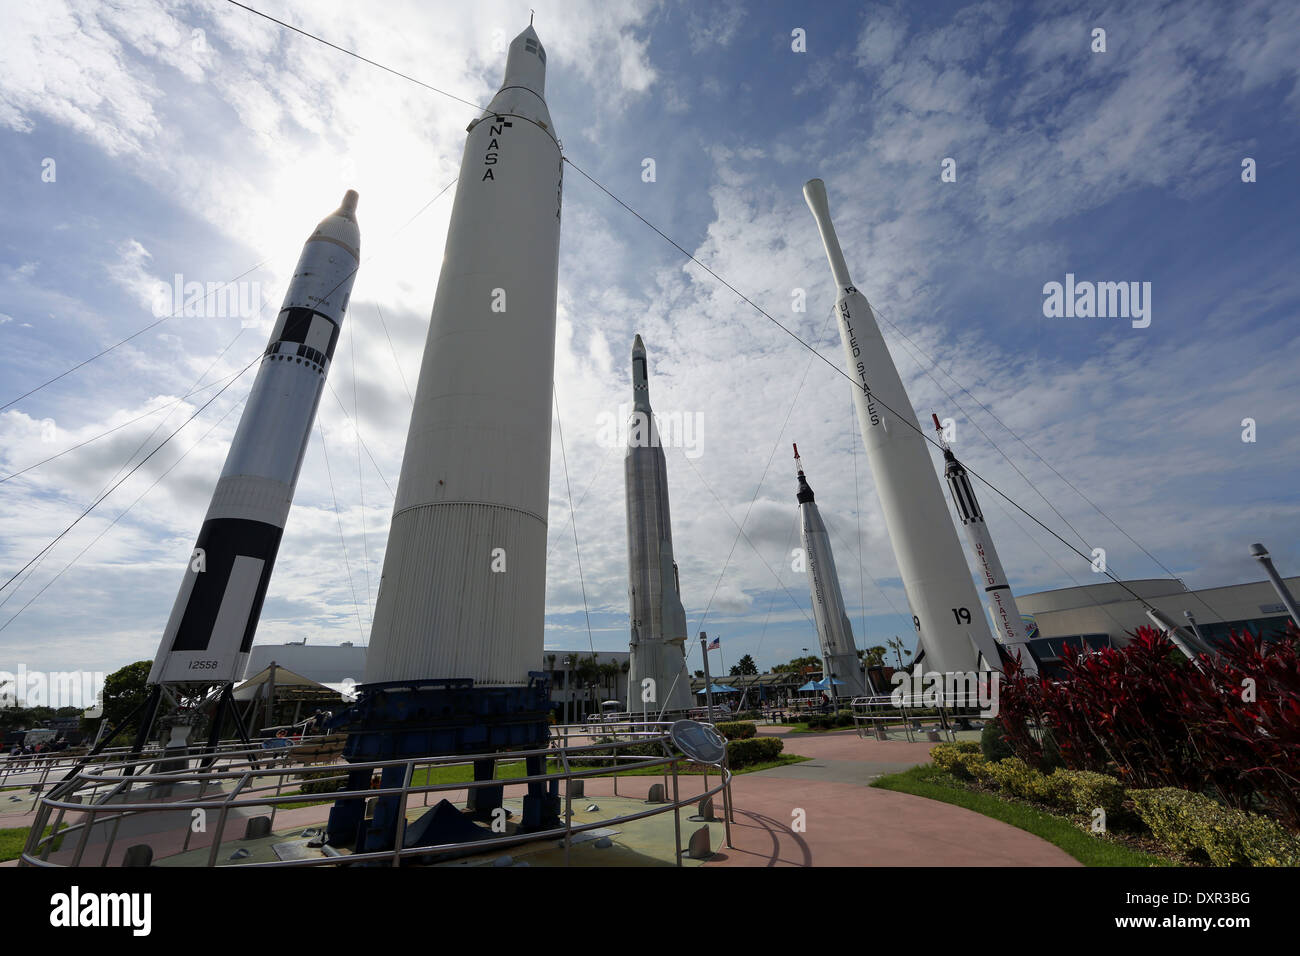 Merritt Islande, États-Unis d'Amérique, le Rocket Garden au Kennedy Space Center Visitor Complex Banque D'Images